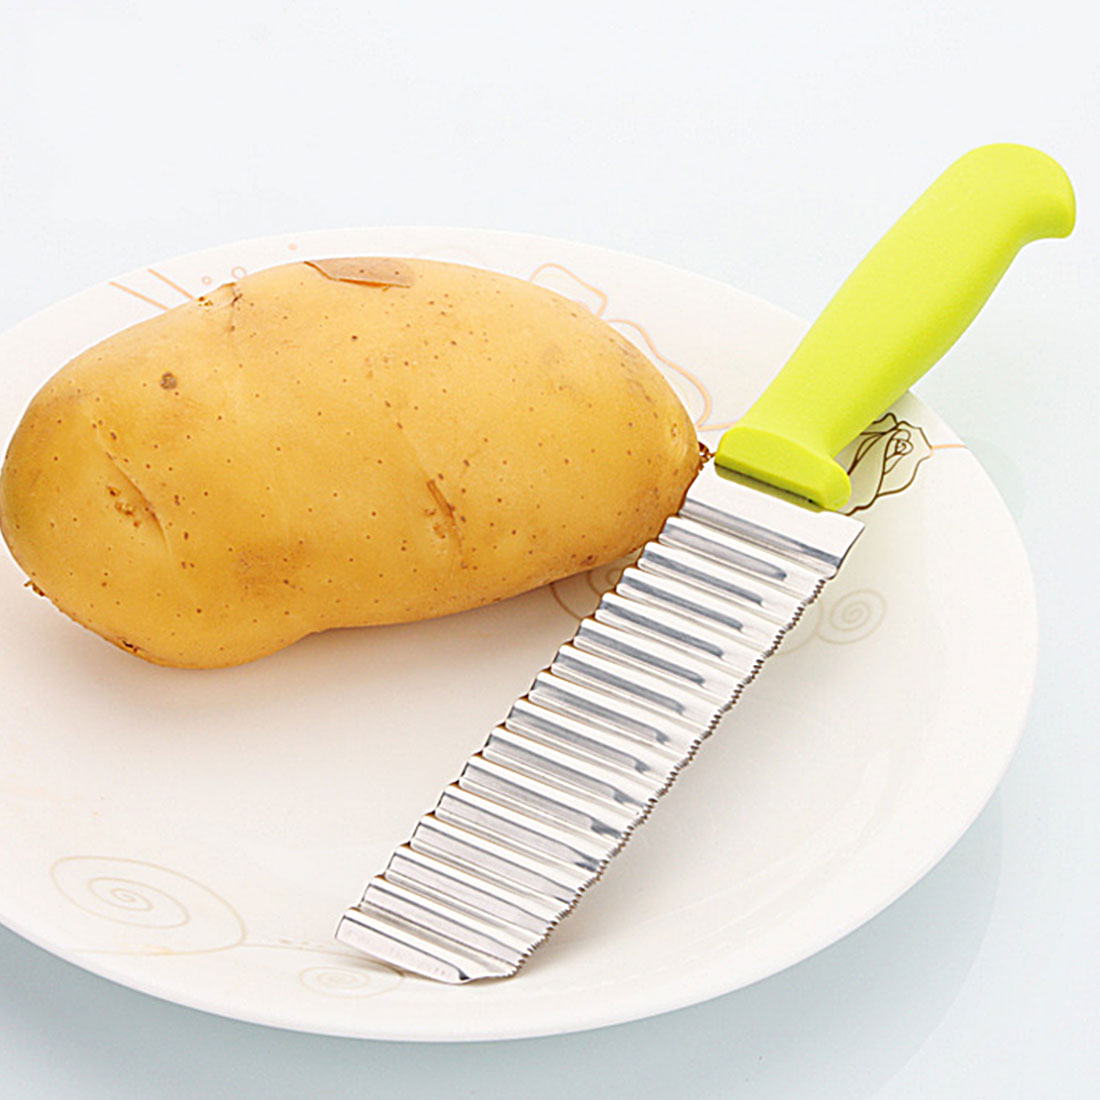 Neueste Edelstahl Welle Messer Kartoffel Schneiden Gut Messer Frites Chips Cutter Schneidemaschine Kochen Werkzeuge